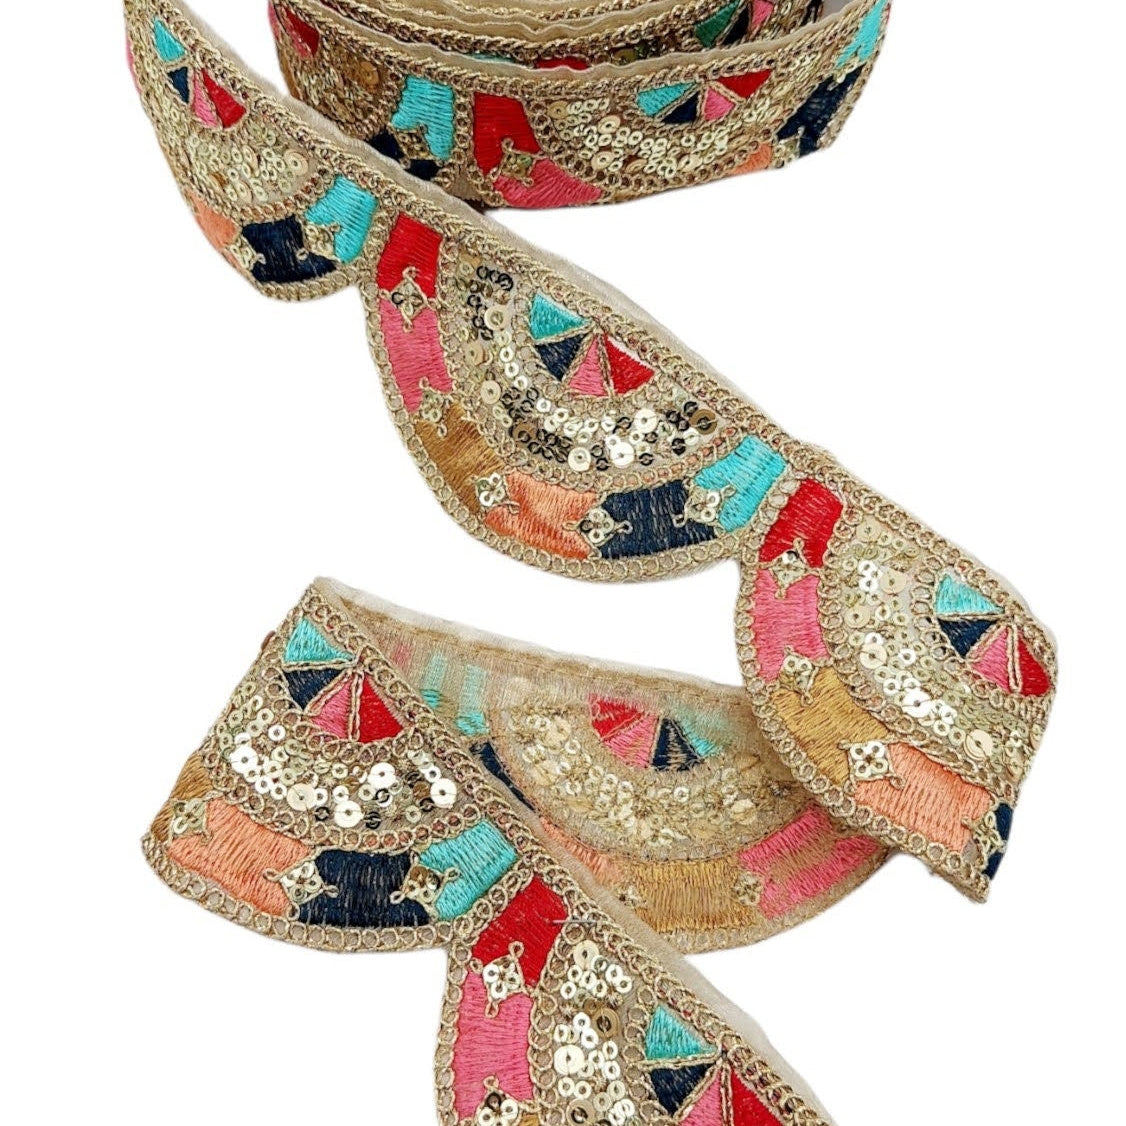 9 Yards Multicoloured Embroidered Trim, Decorative Trim, Indian Sari Border Sequin Trimming